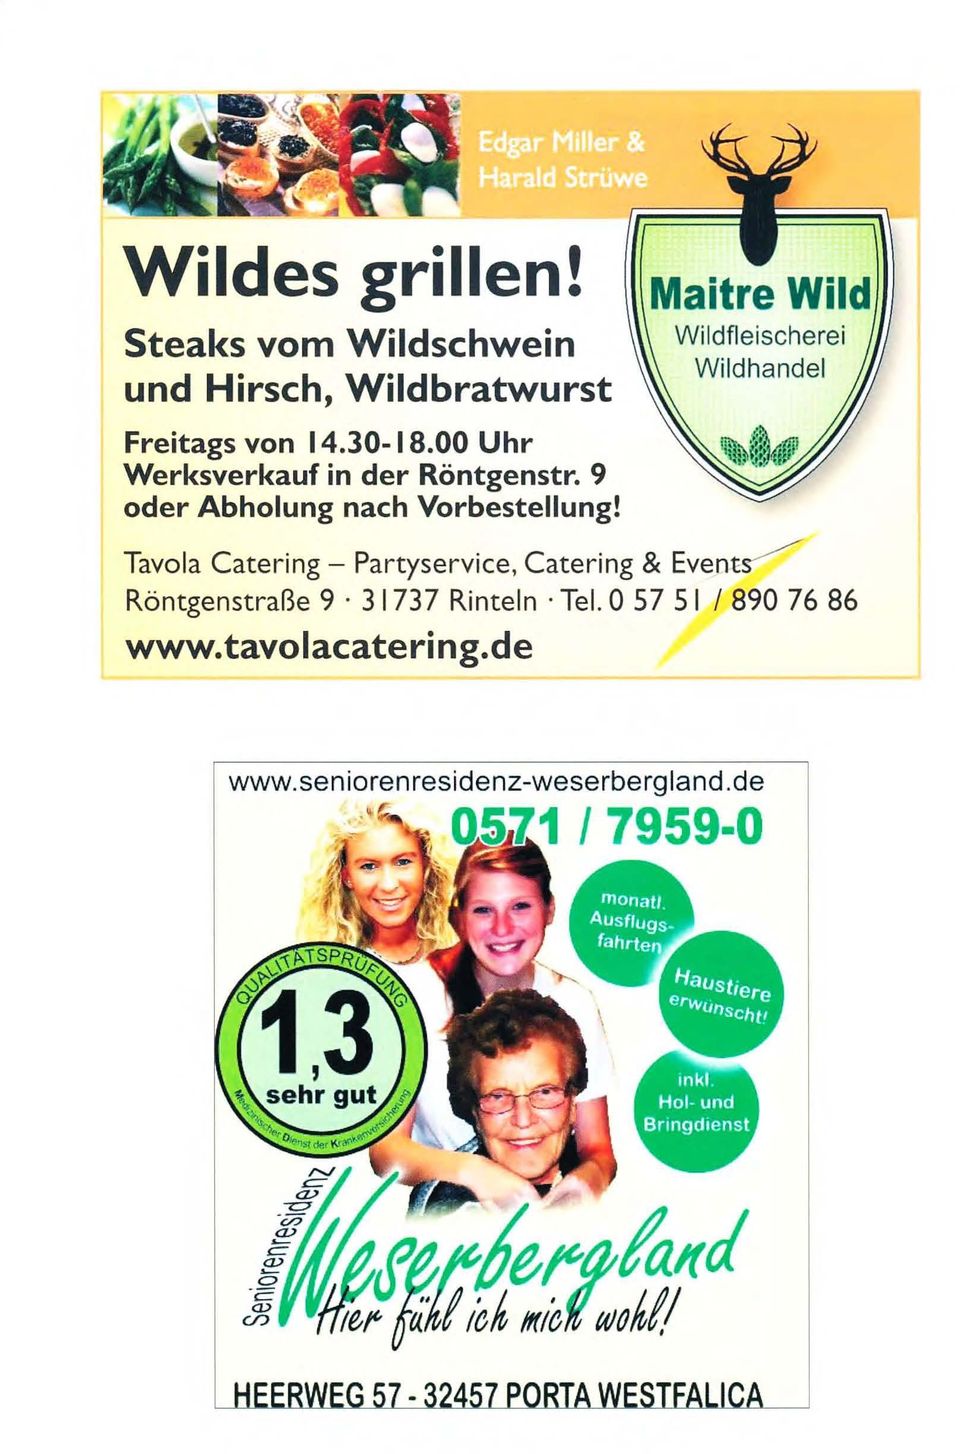 Maitre Wild Wildfleischerei Wildhandel Tavola Catering - Partyservice, Catering & Event~